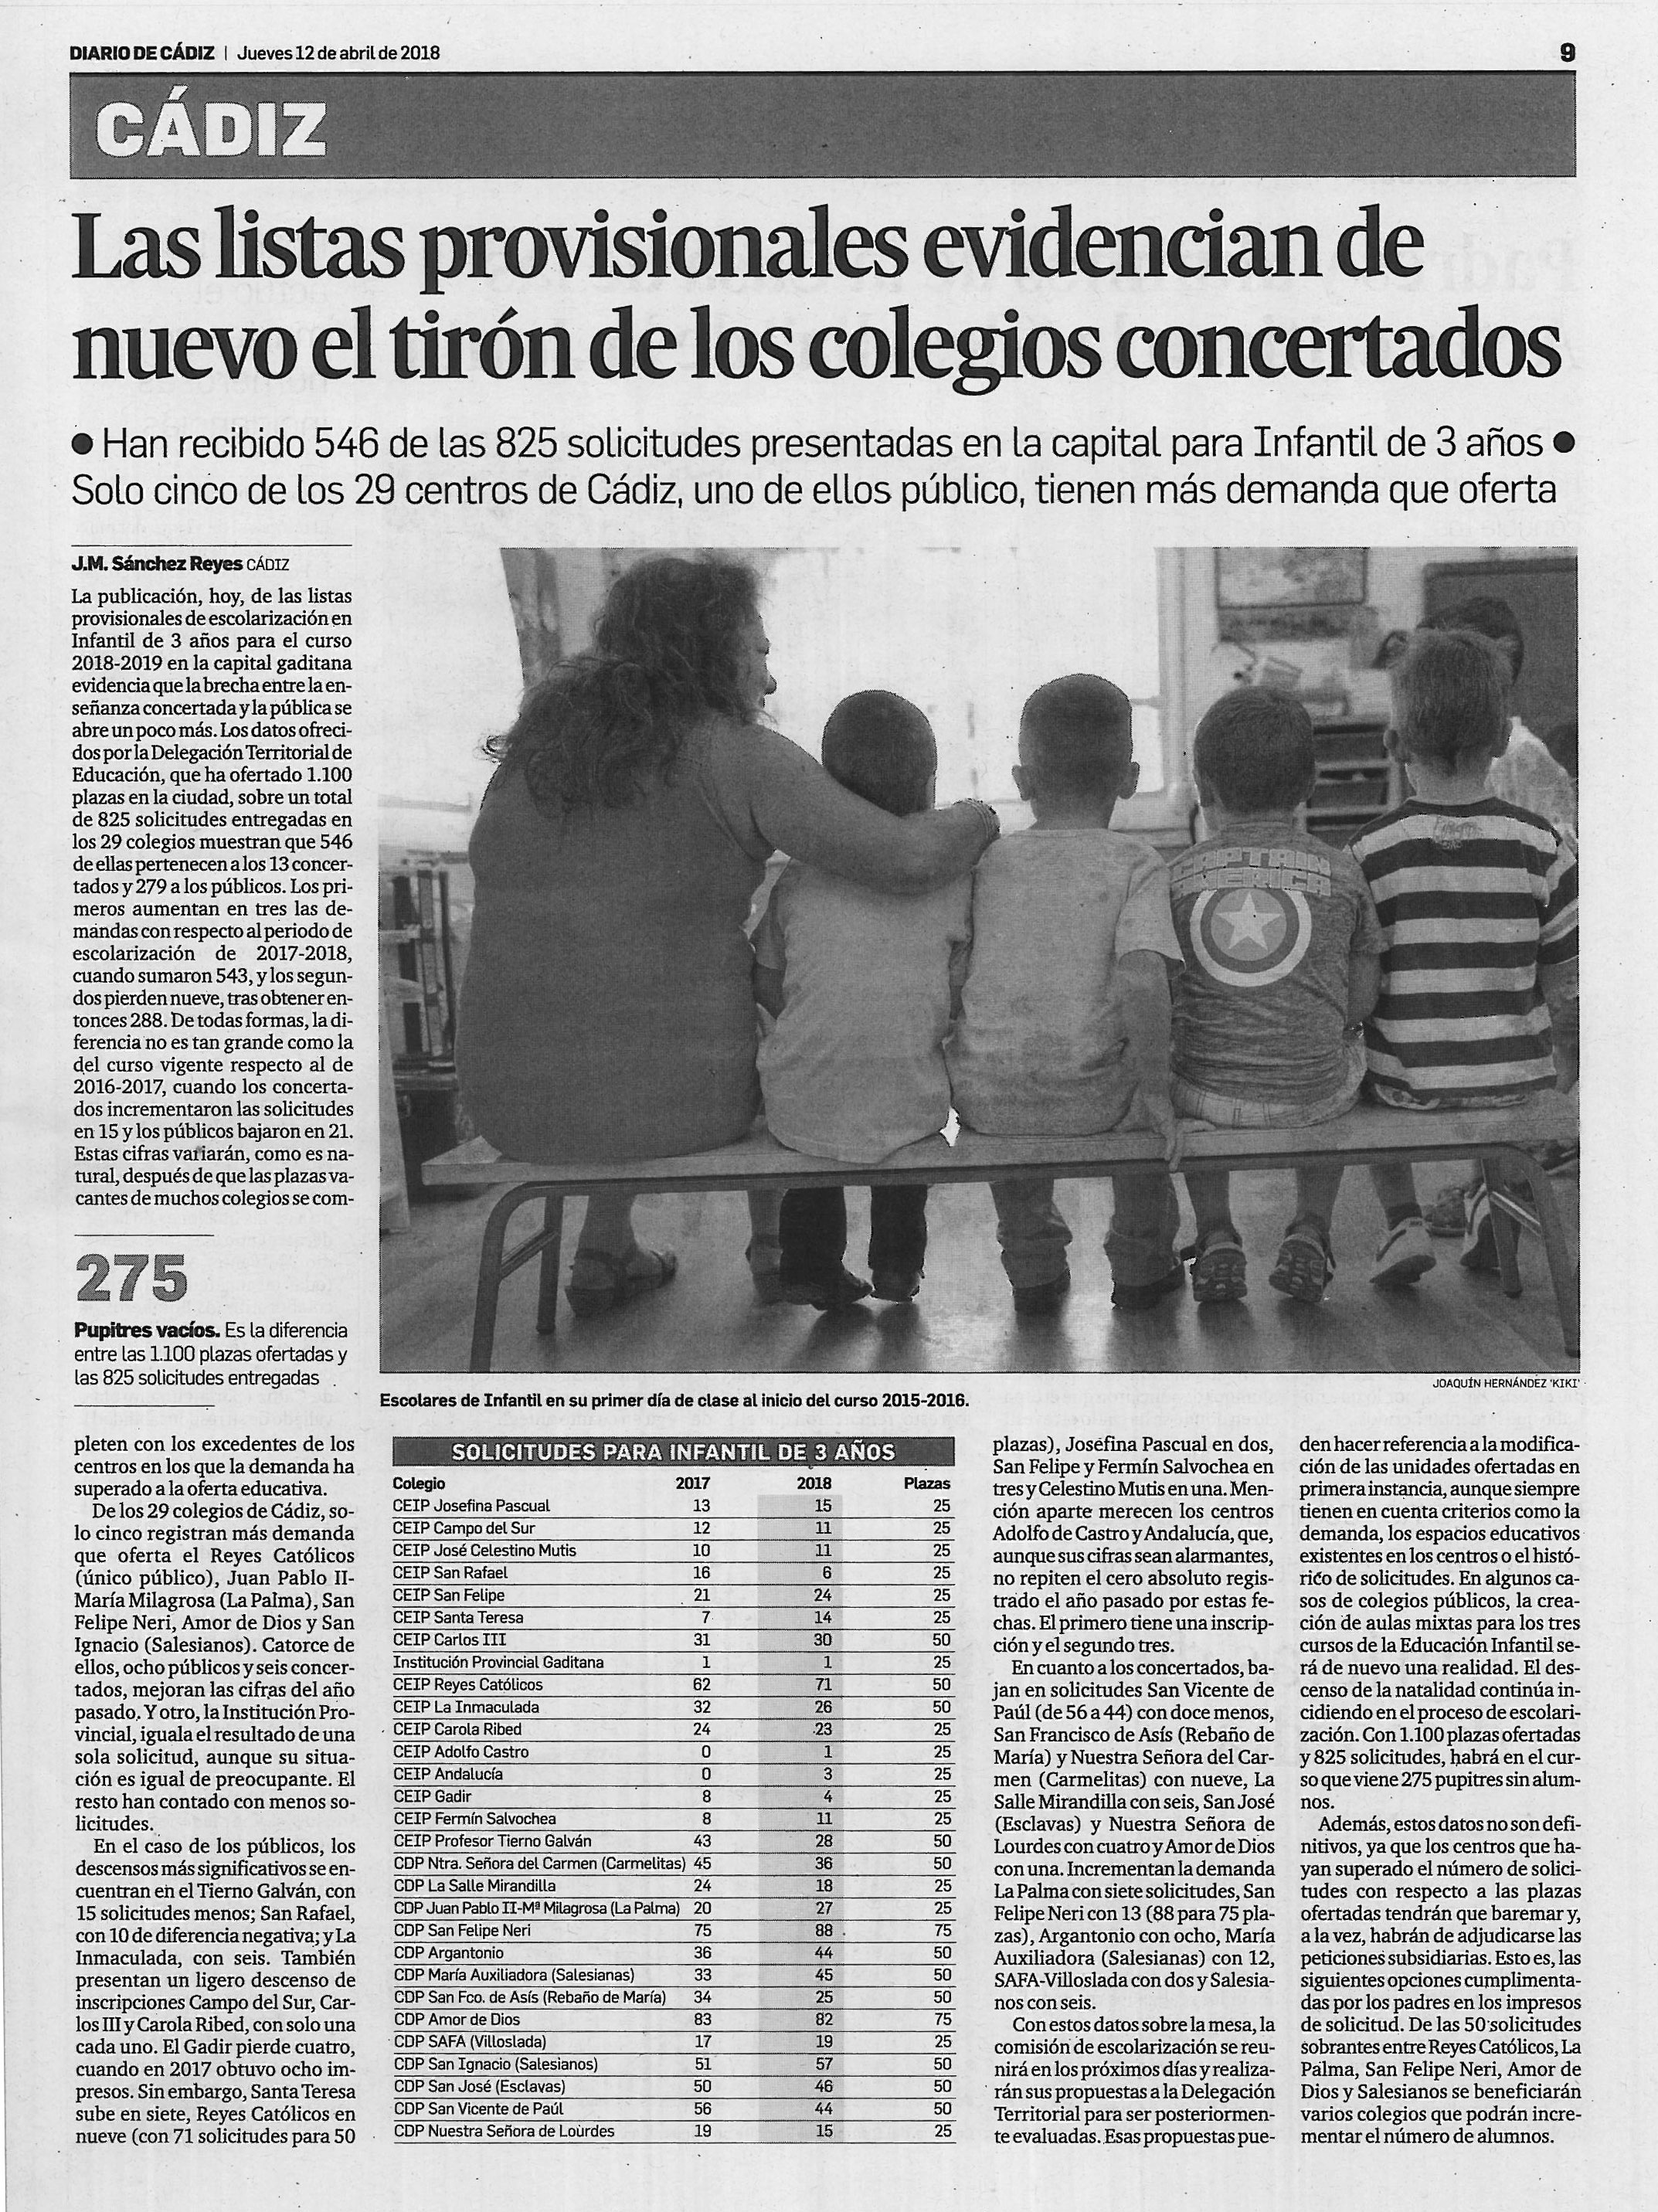 Noticia del Diario de Cádiz del jueves 12 de abril de 2018